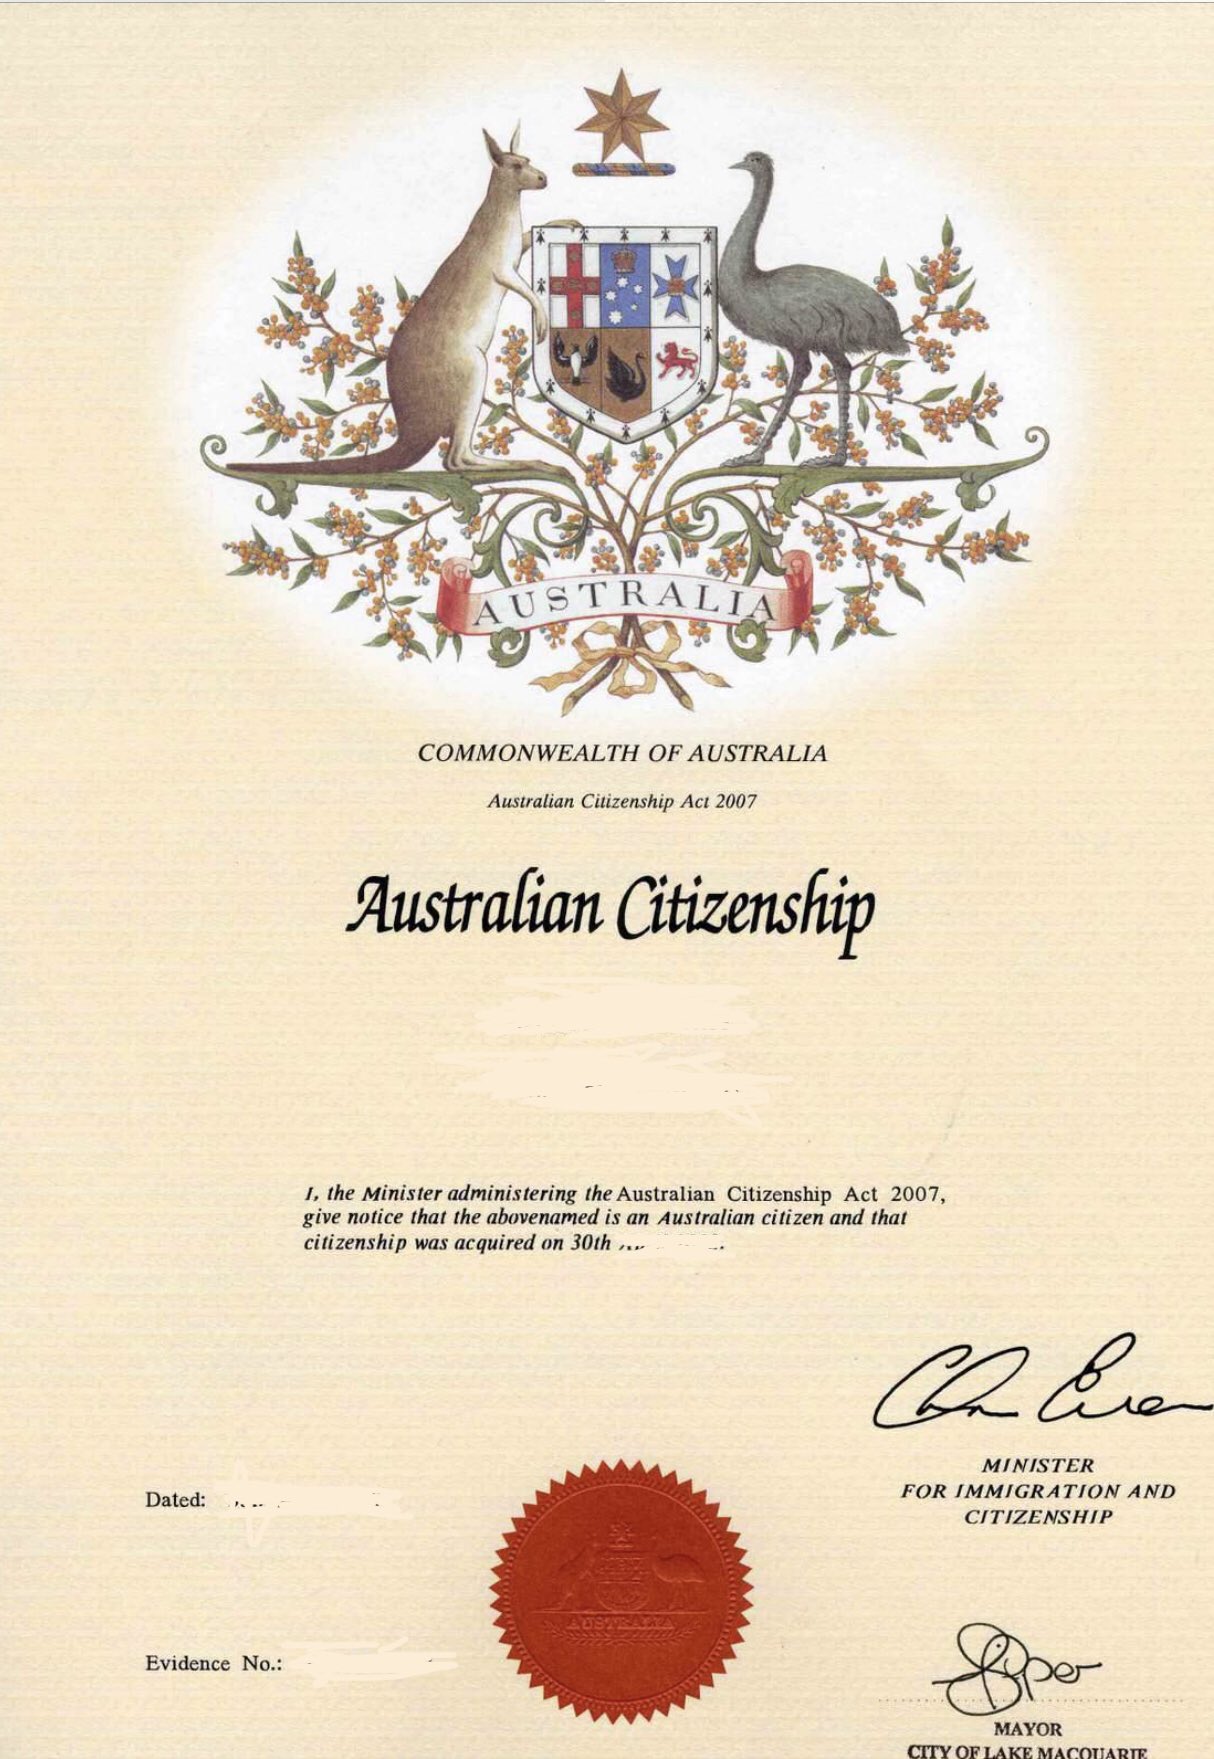 Rindende fiber Legitim David Brauer on Twitter: "Wife got her evidence of Australian Citizenship  today. It's a beaut. https://t.co/ZSH2a79kft" / Twitter